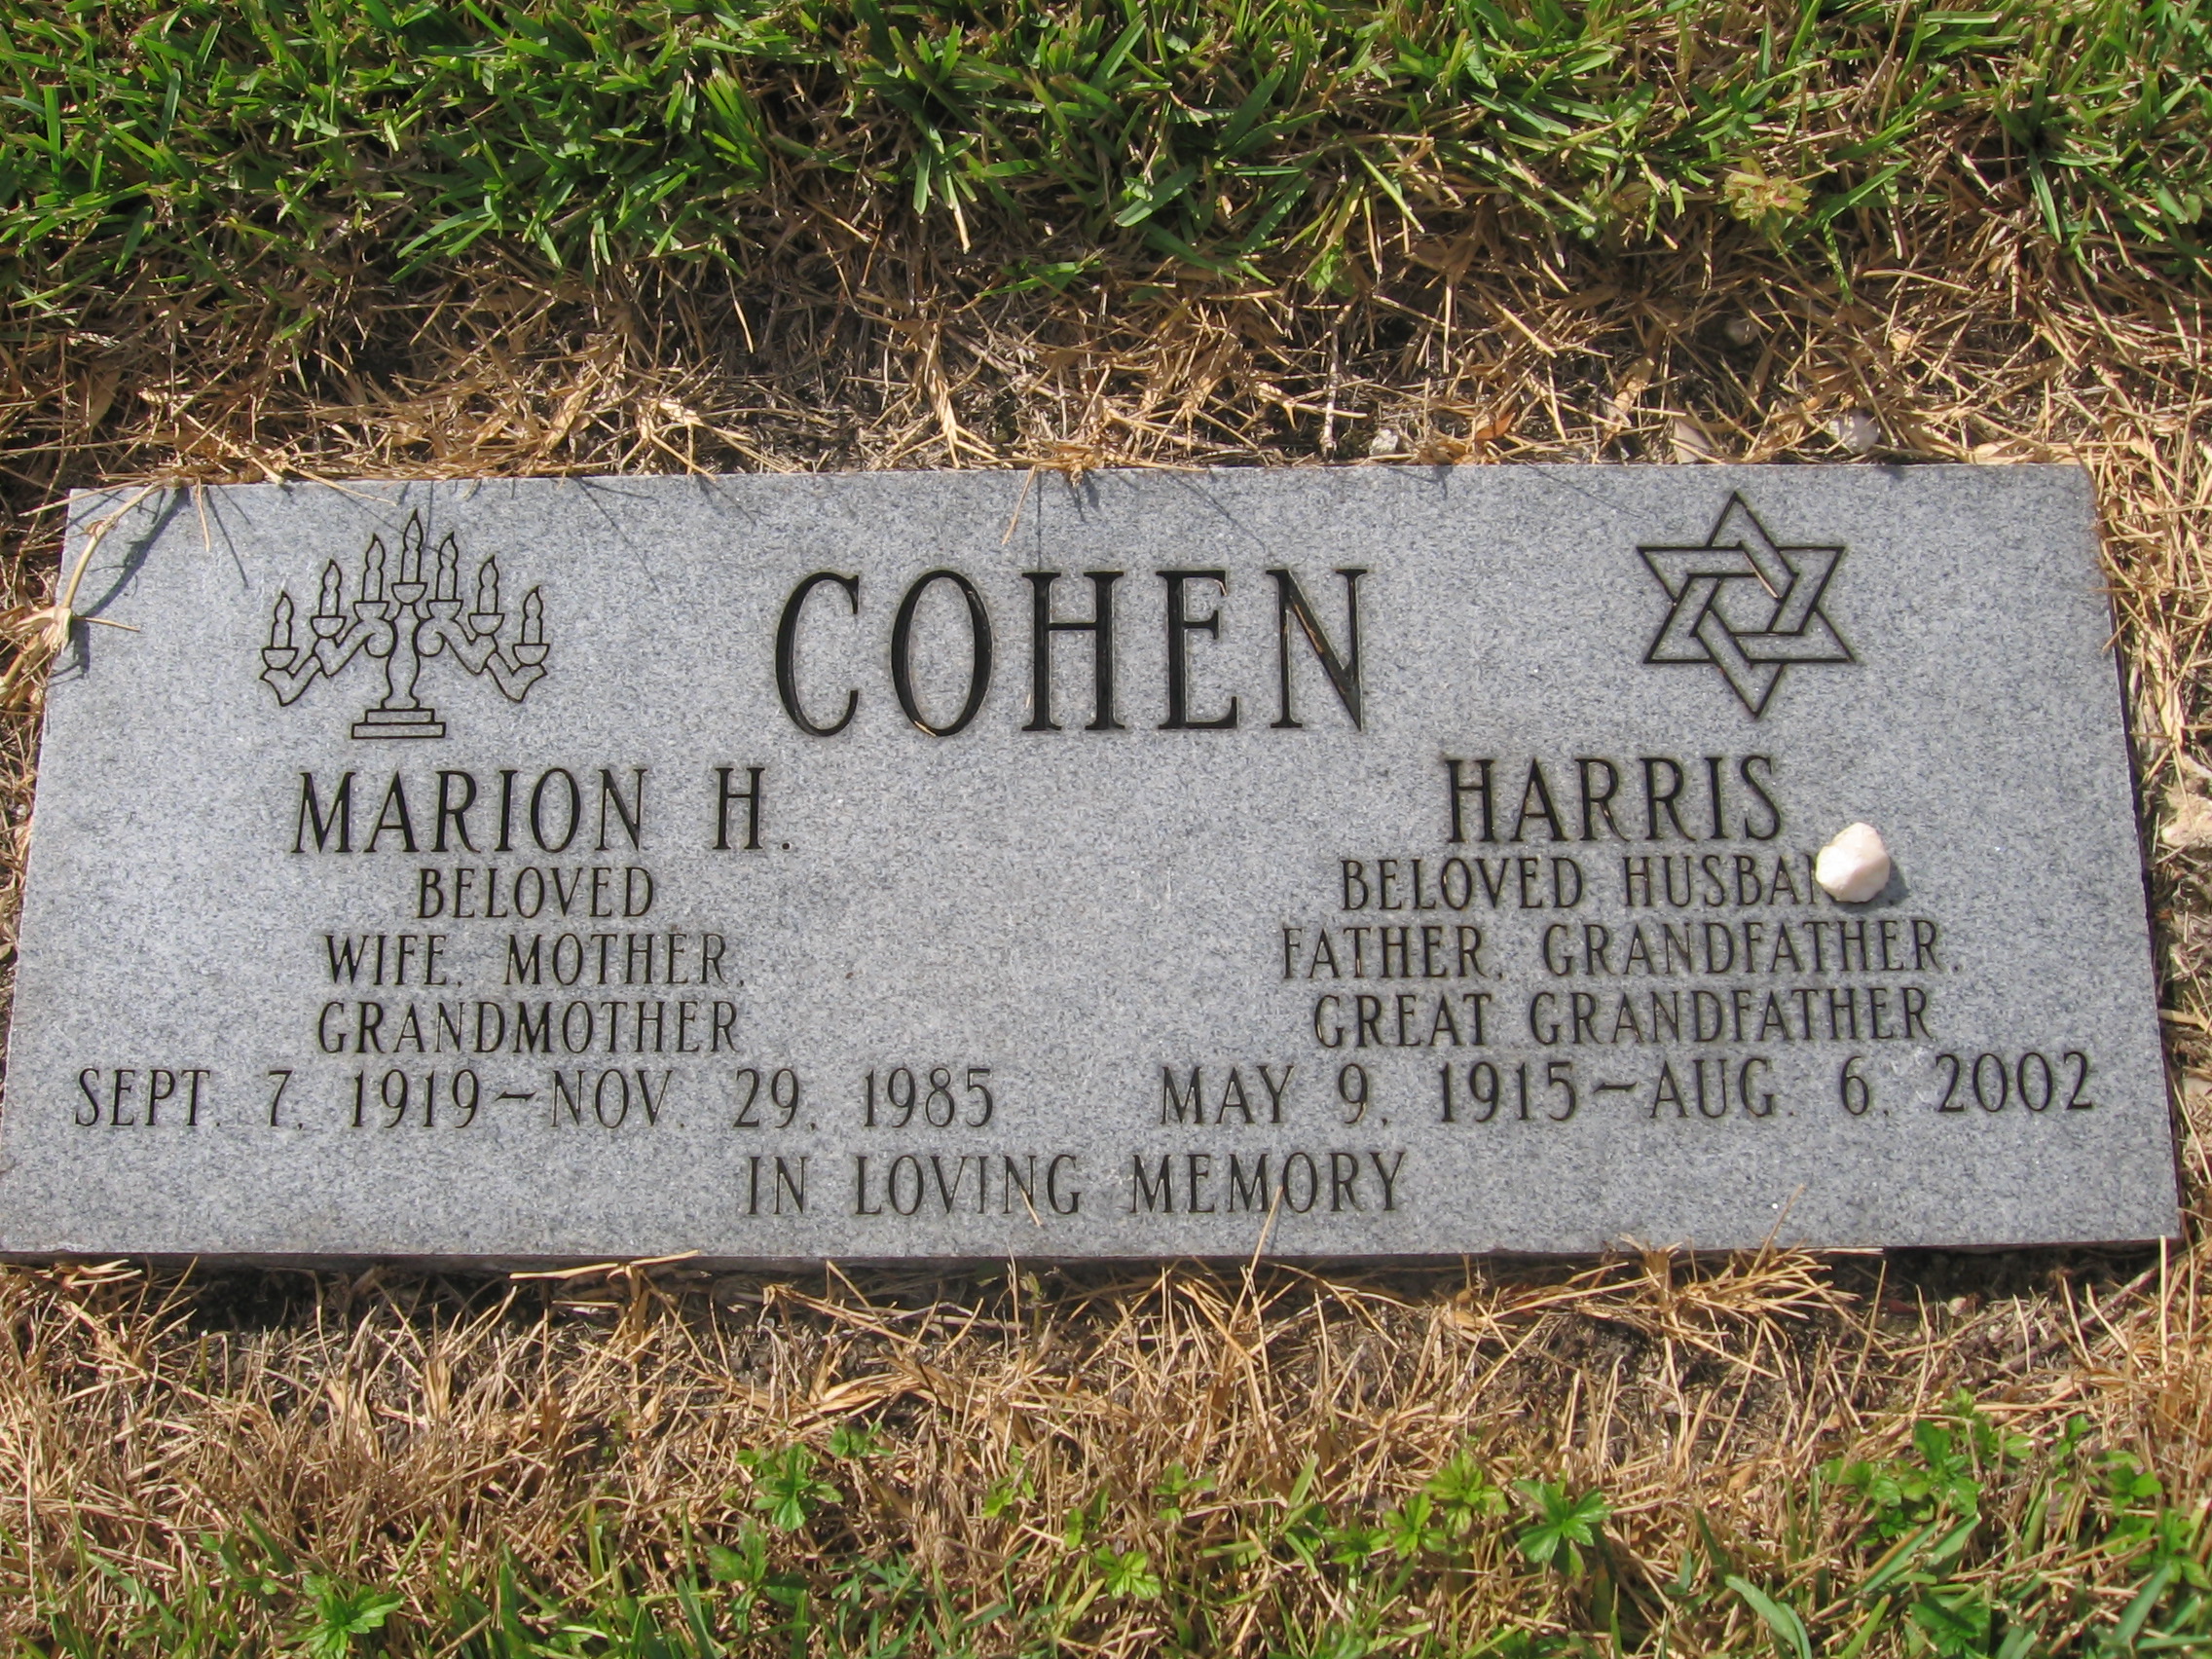 Marion H Cohen